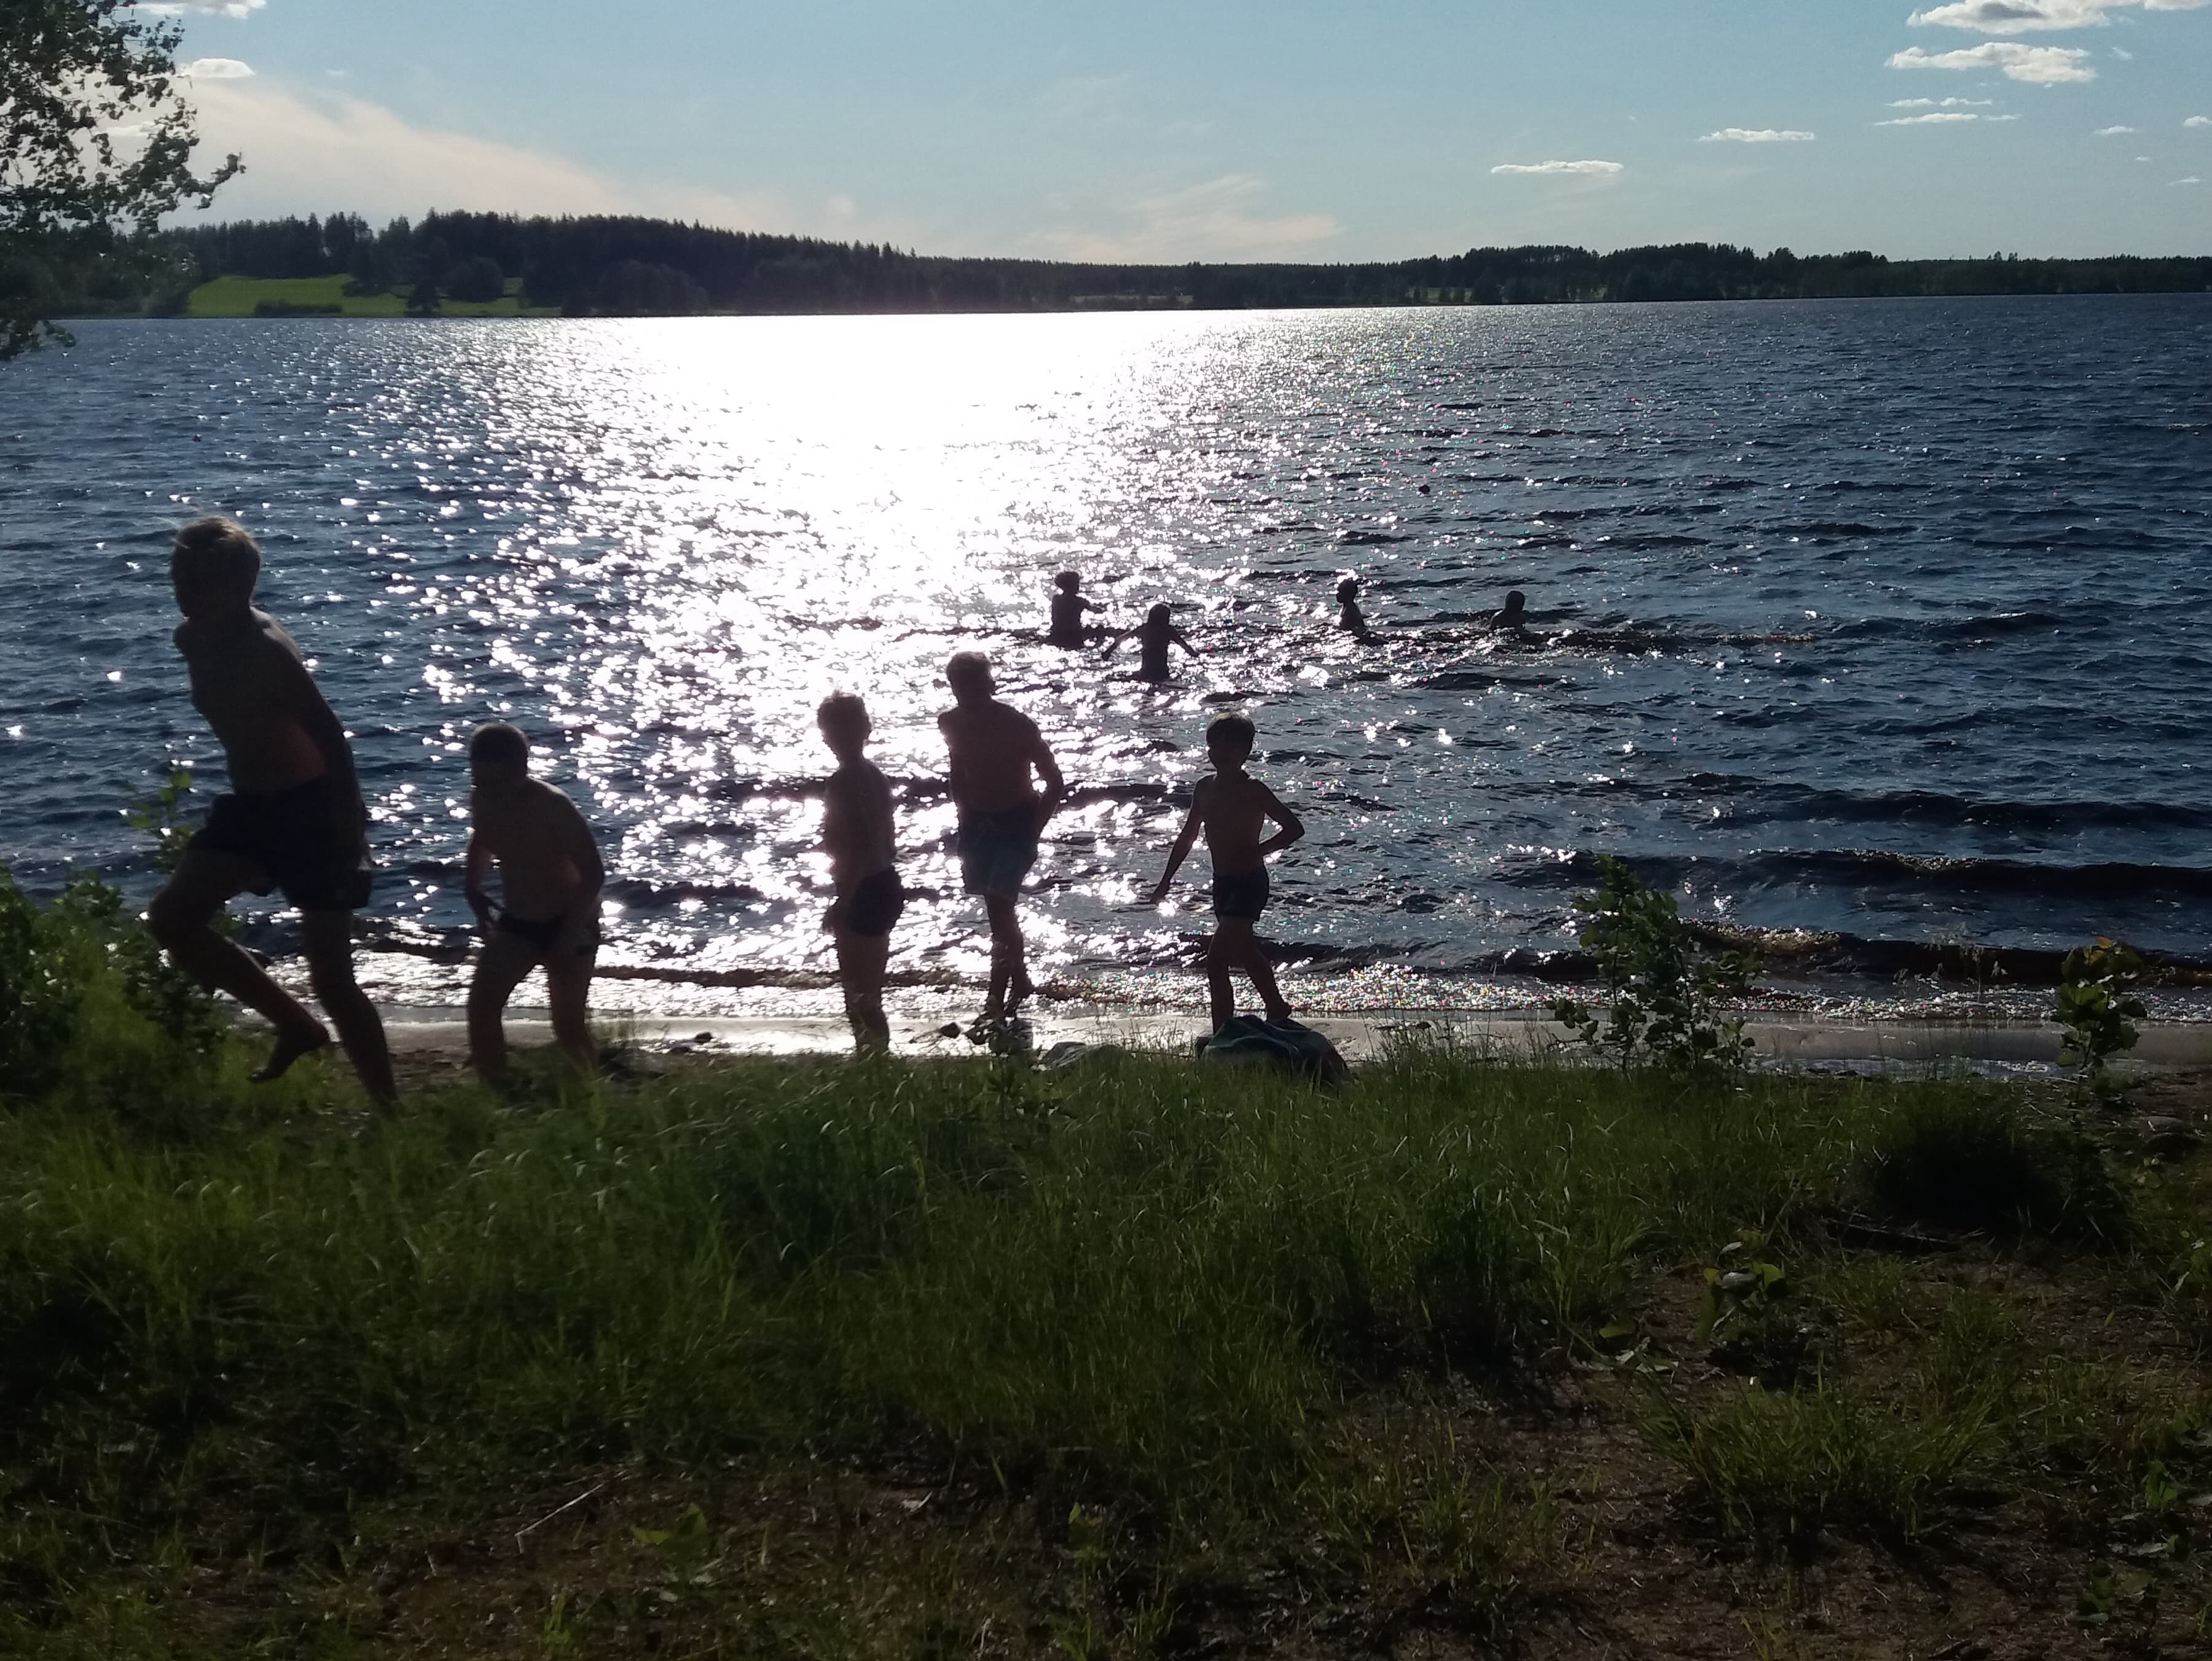 Lapsi menossa uimaan, aurinko kimmelää järven pinnasta.